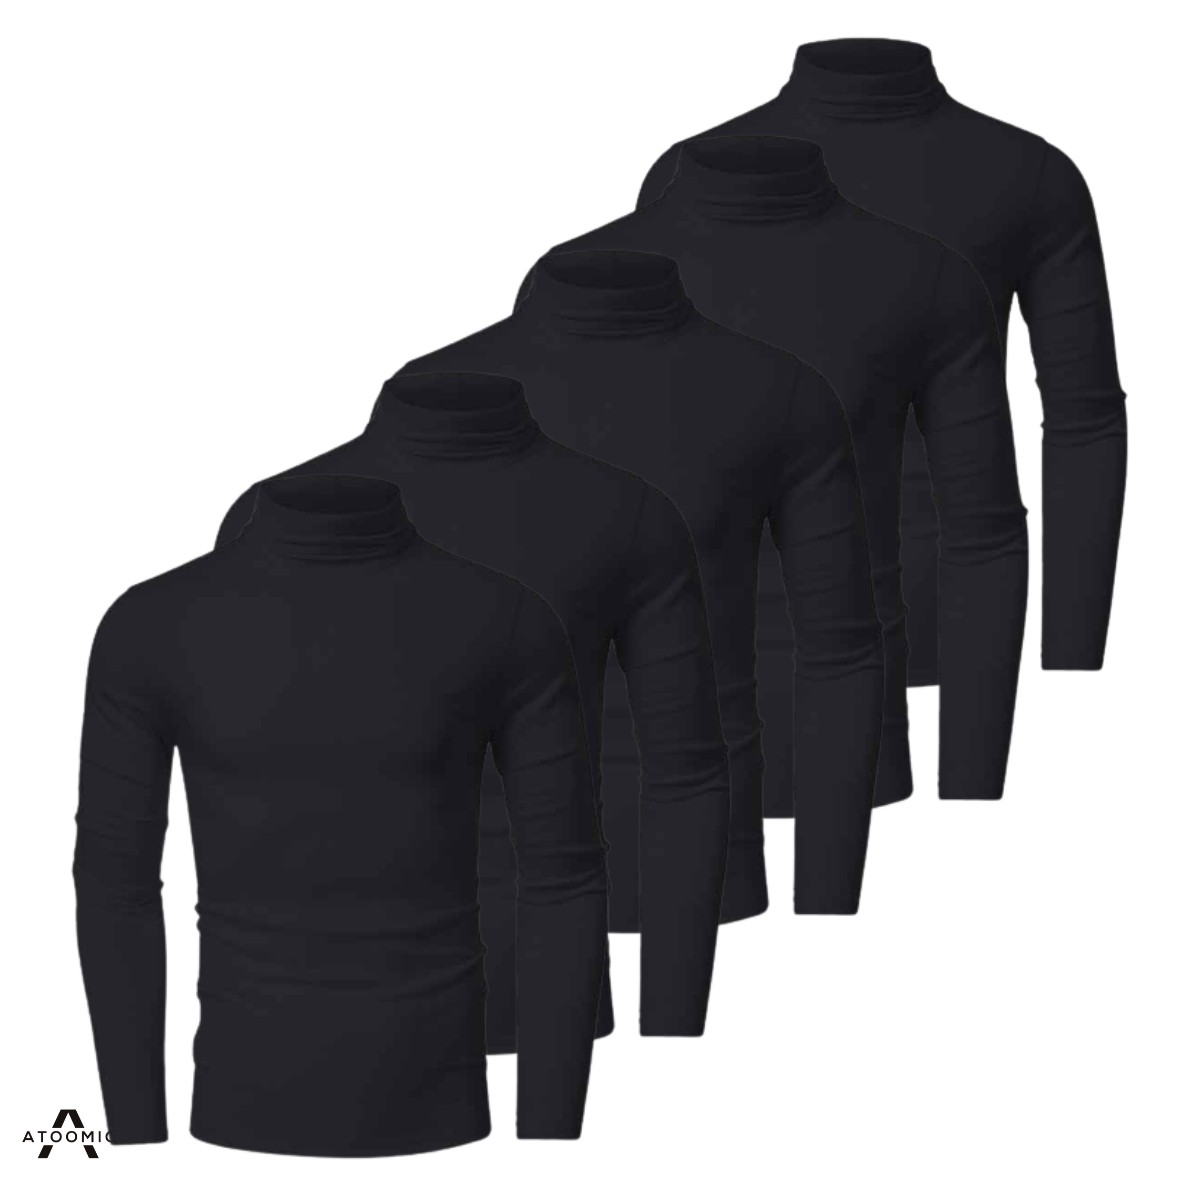 kit 5 camisas térmicas com proteção uv manga longa gola alta preto